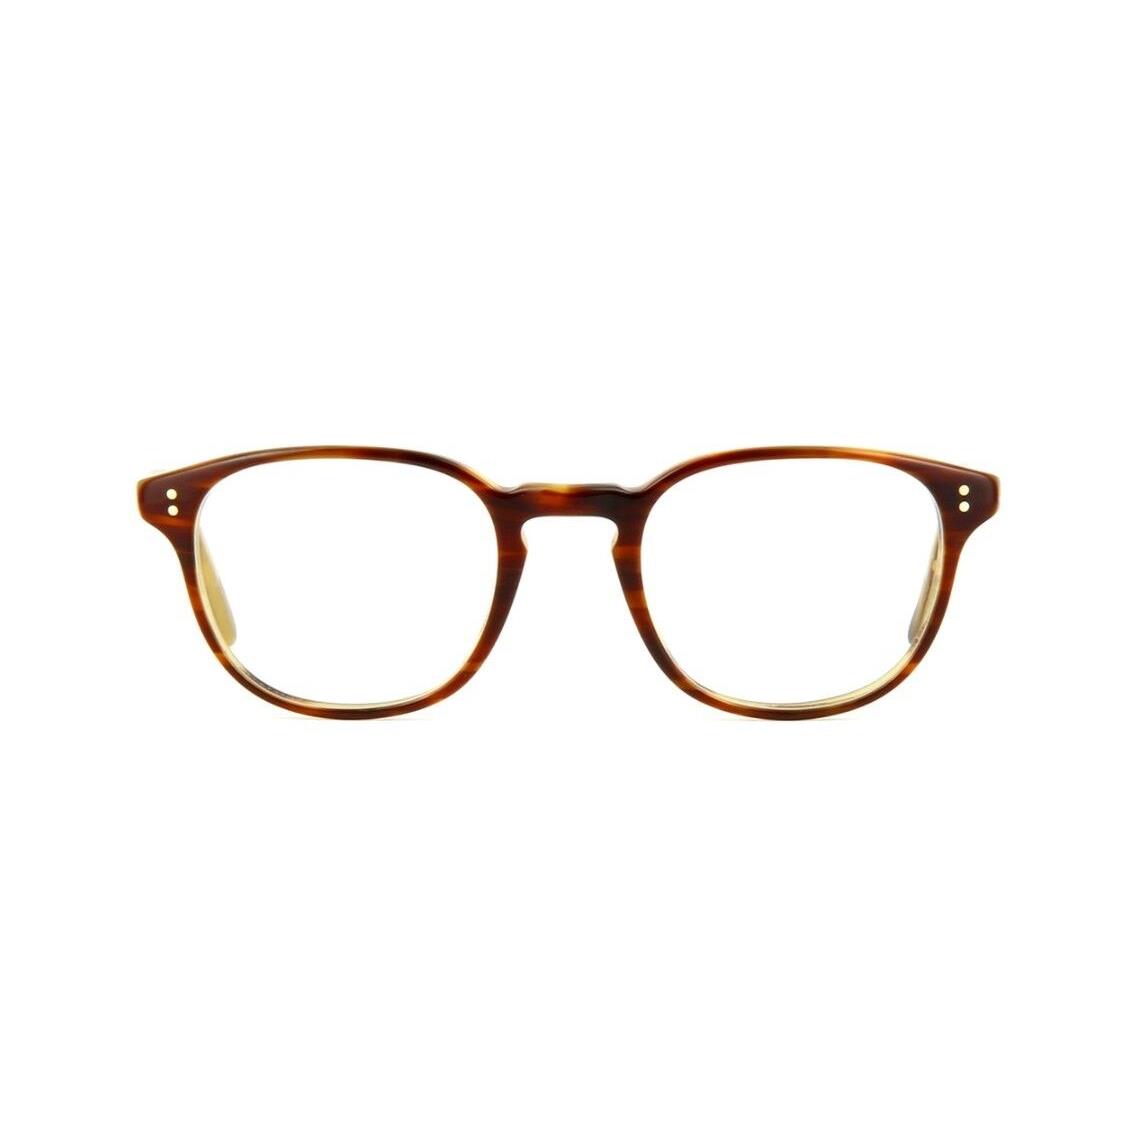 Oliver Peoples eyeglasses  - Amaretto Tortoise Frame 0